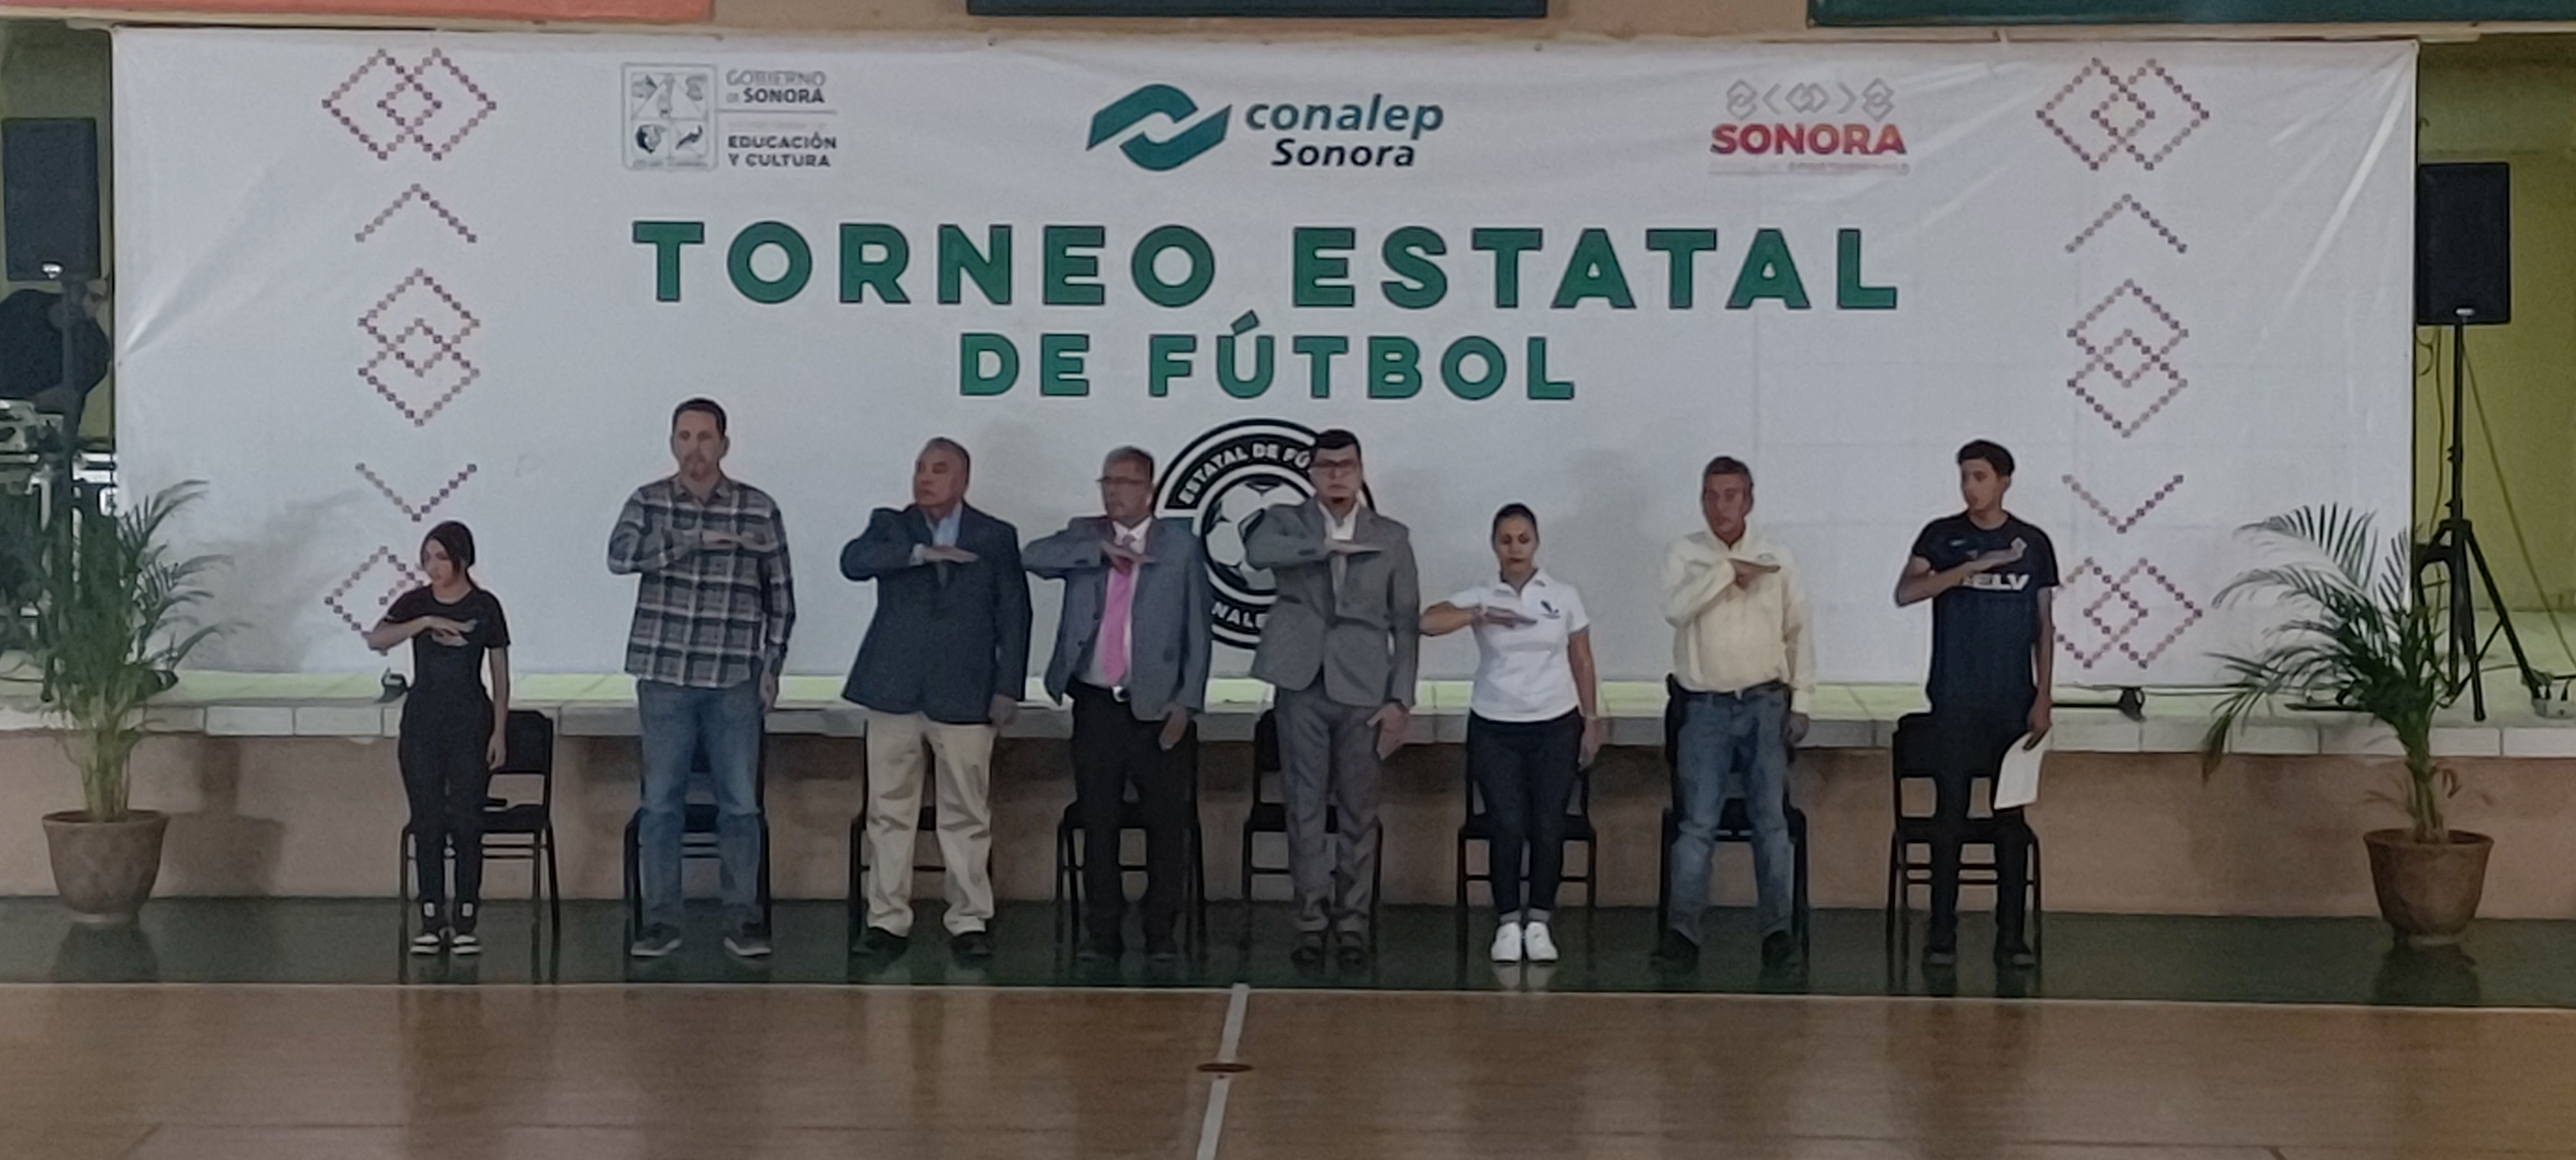 Reactiva Conalep Sonora actividades deportivas con Torneo Estatal de Fútbol.                                                                                                                                                                              